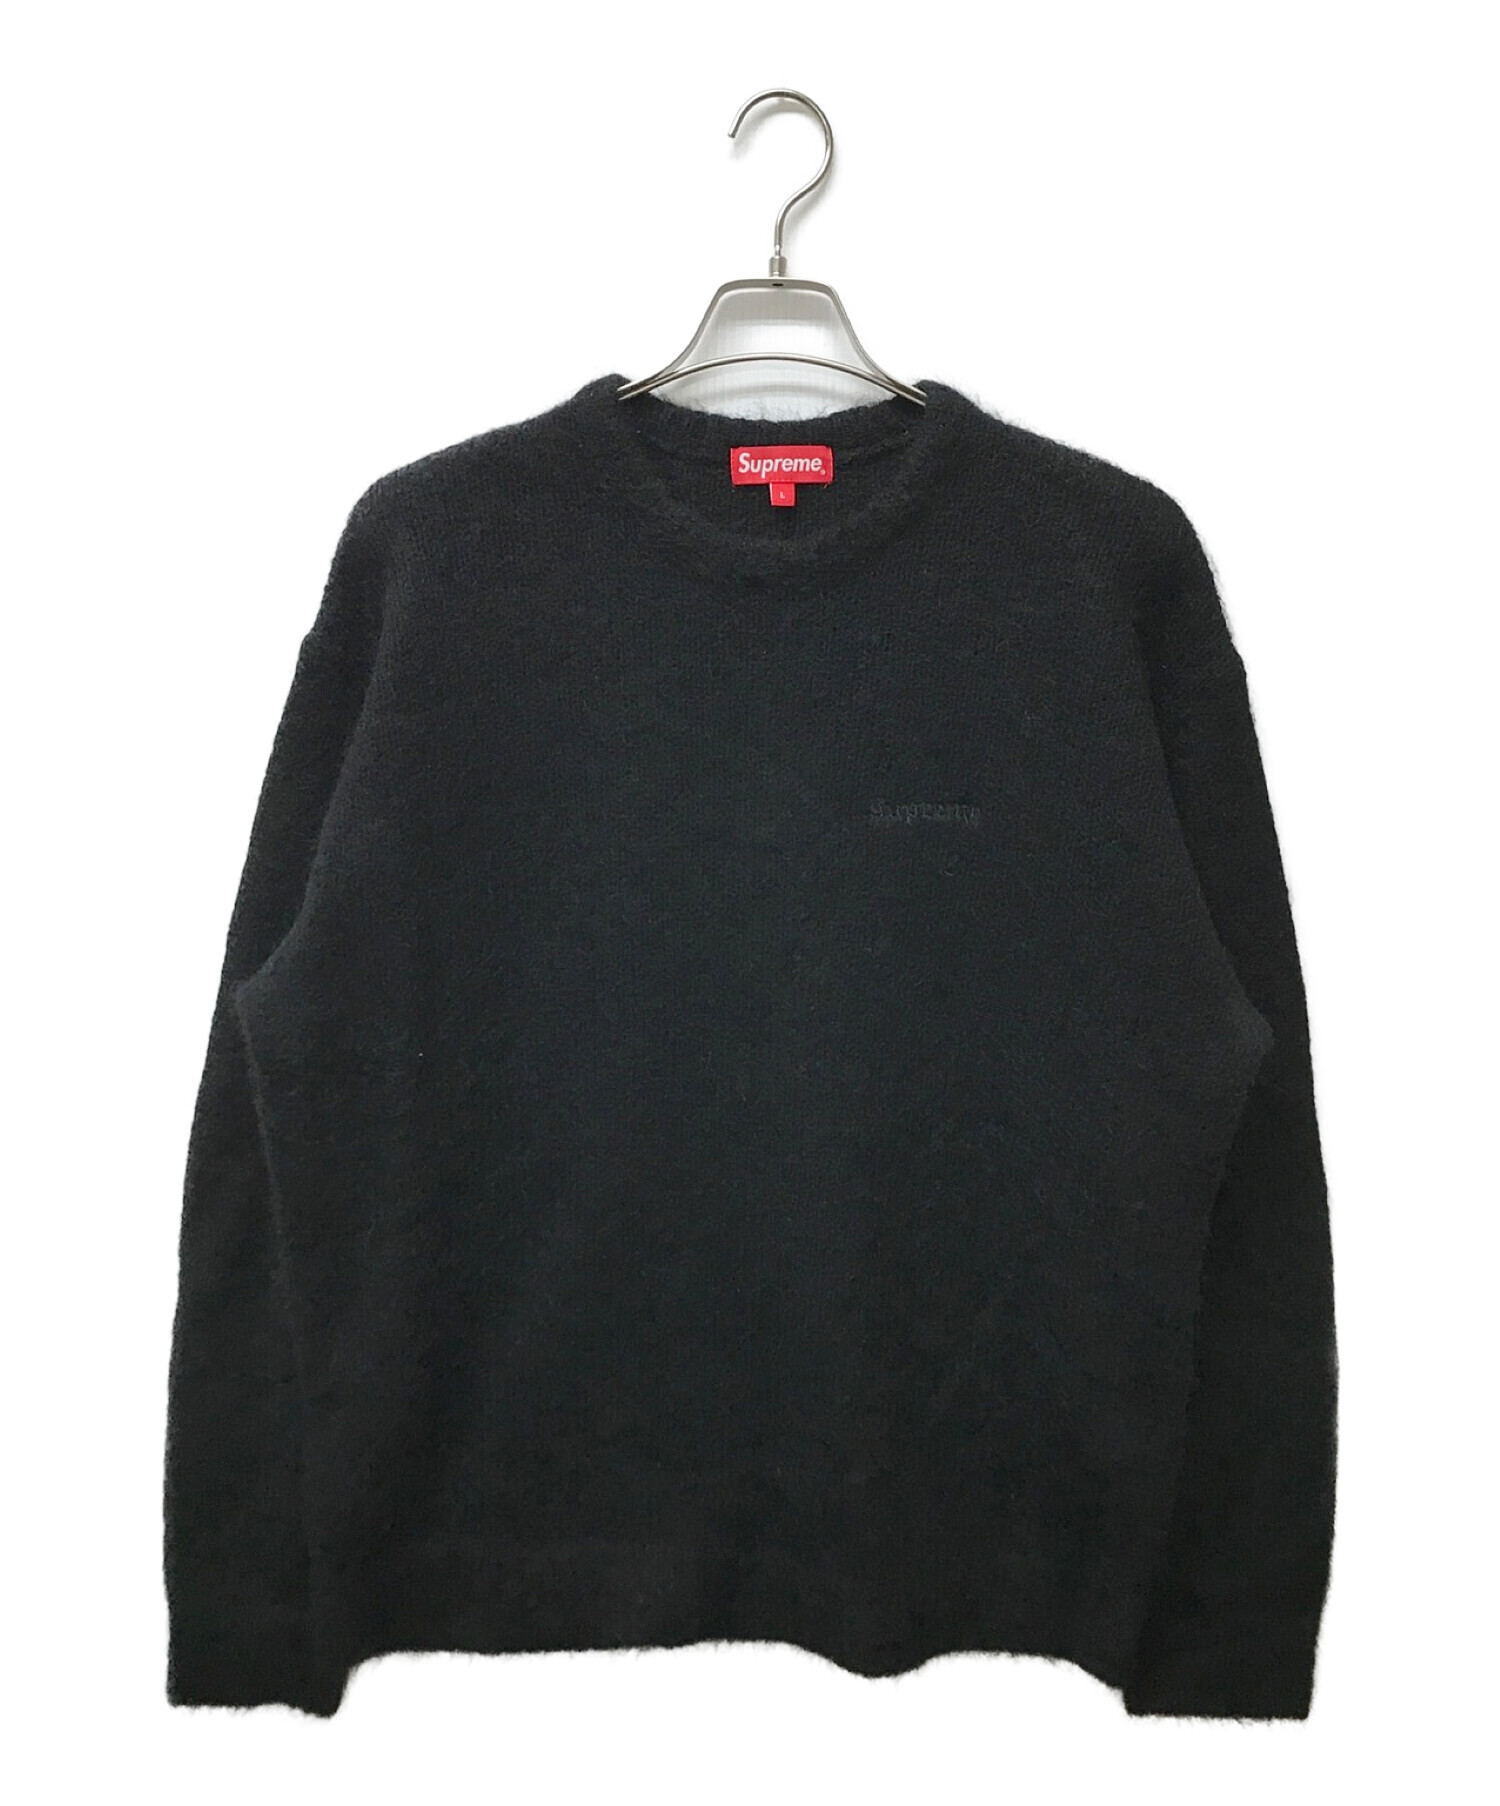 Supreme (シュプリーム) 22AW Mohair Sweater ブラック サイズ:L